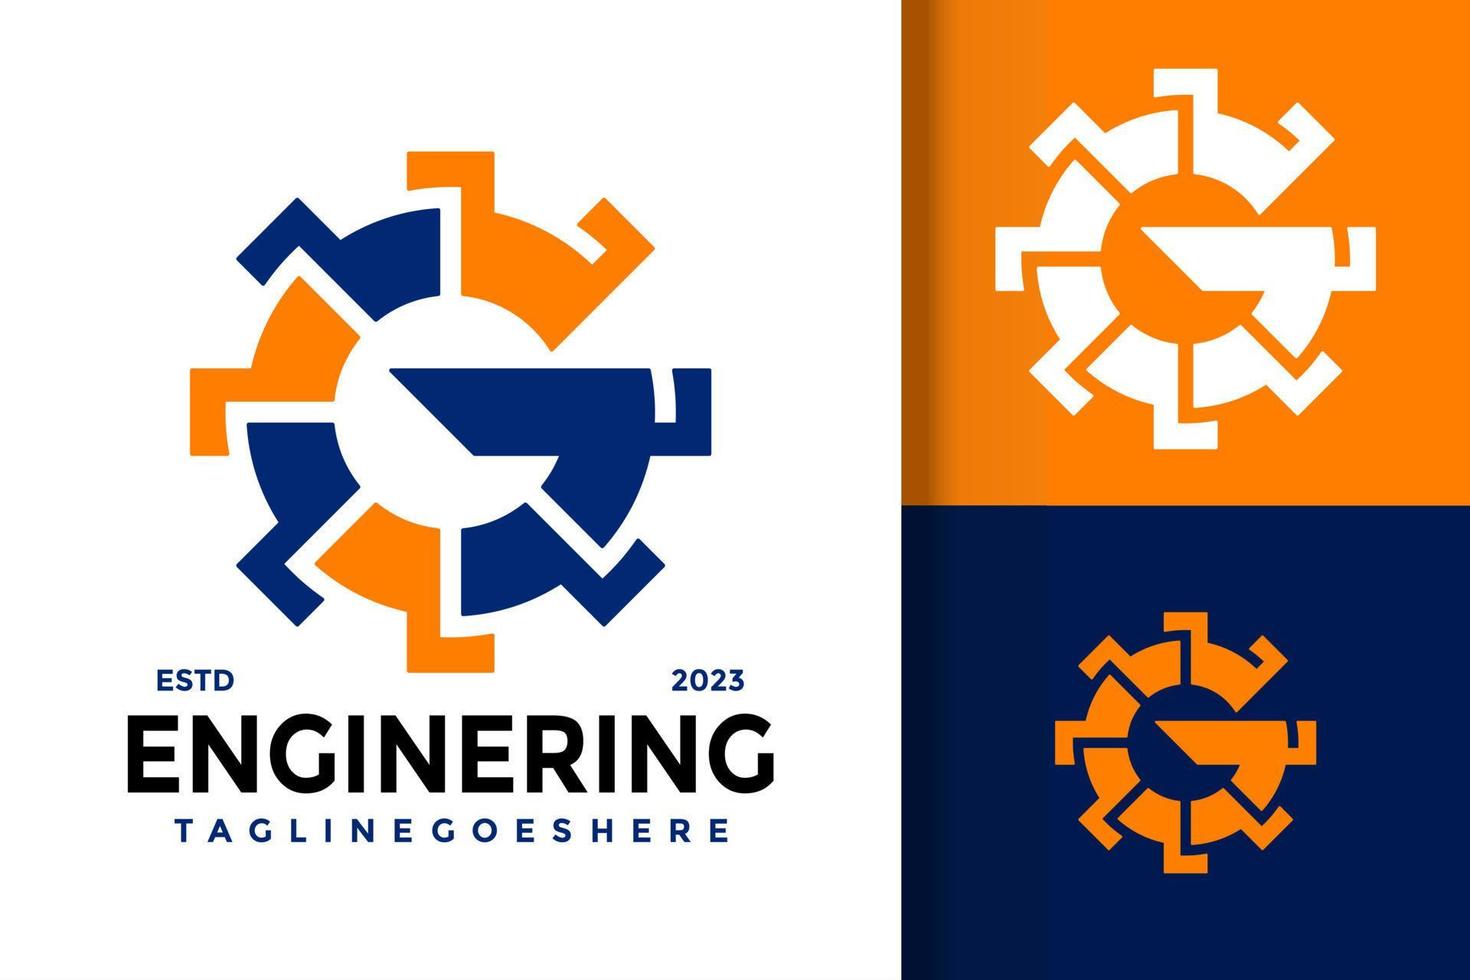 lettre g gear engineering logo logos élément de conception modèle d'illustration vectorielle stock vecteur